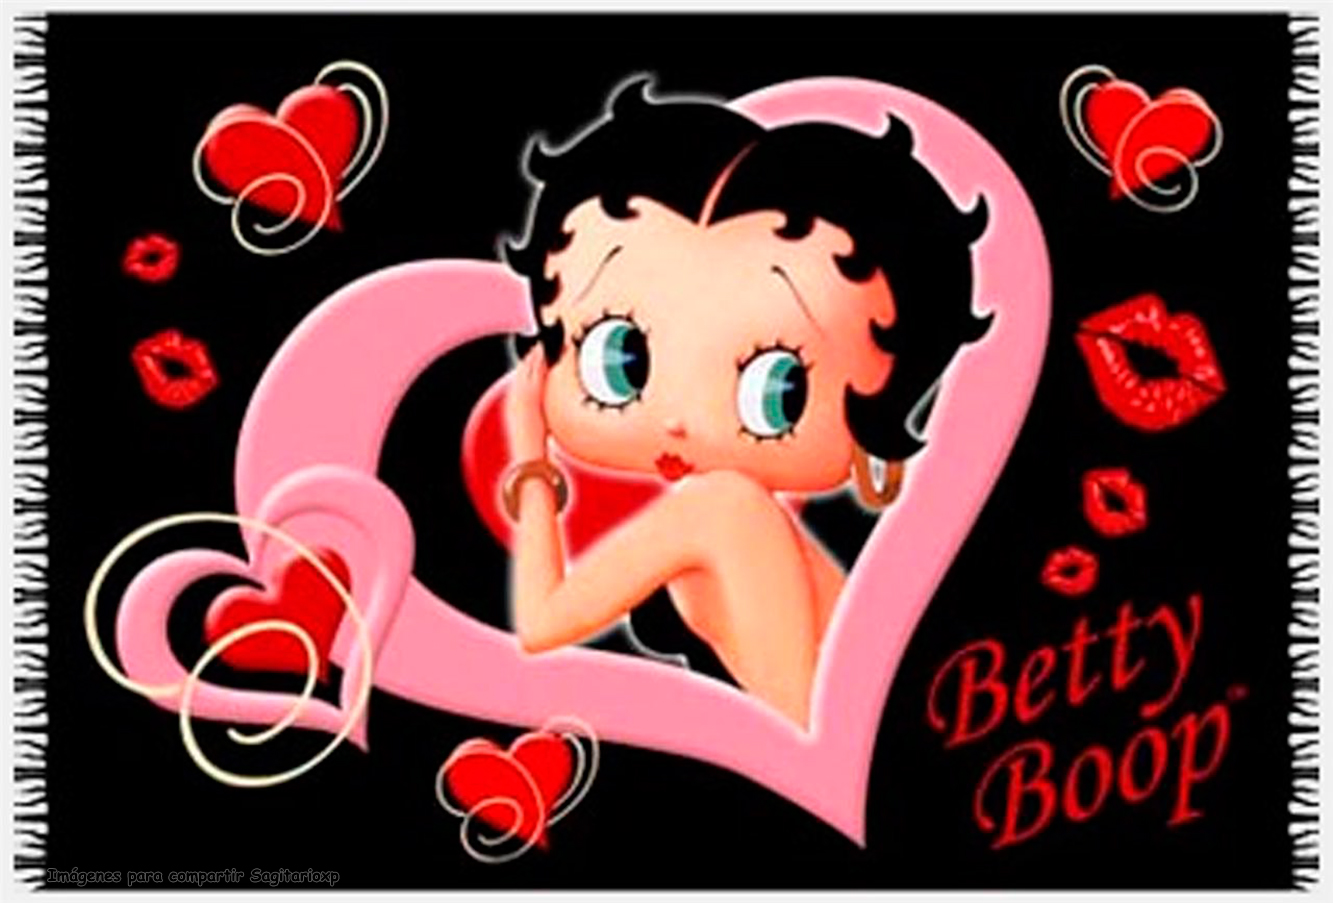 Imágenes de Betty Boop para fondos de pantalla - Imagui